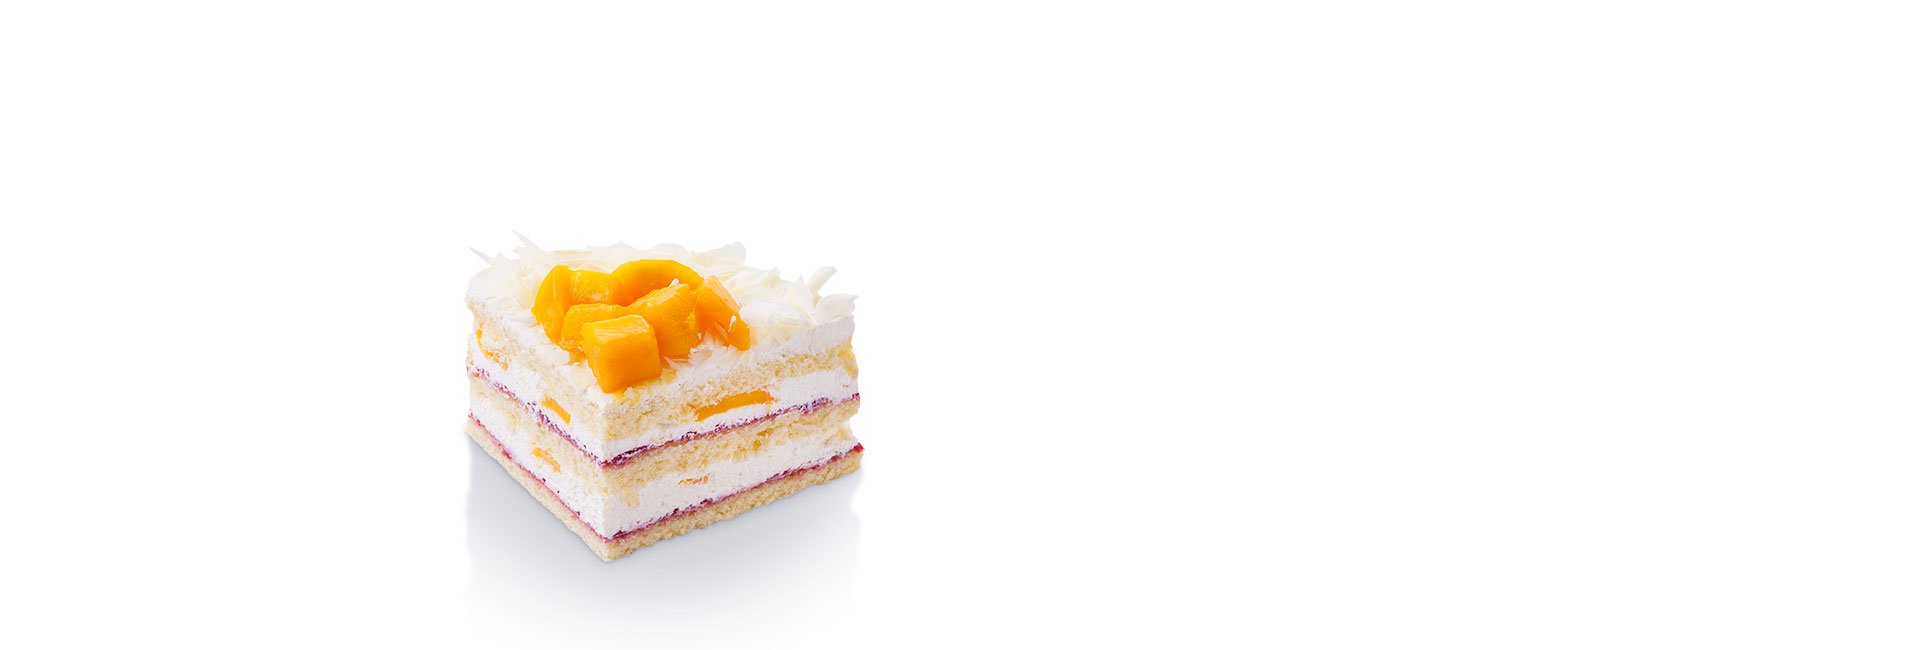 芒芒哒|芒果蛋糕